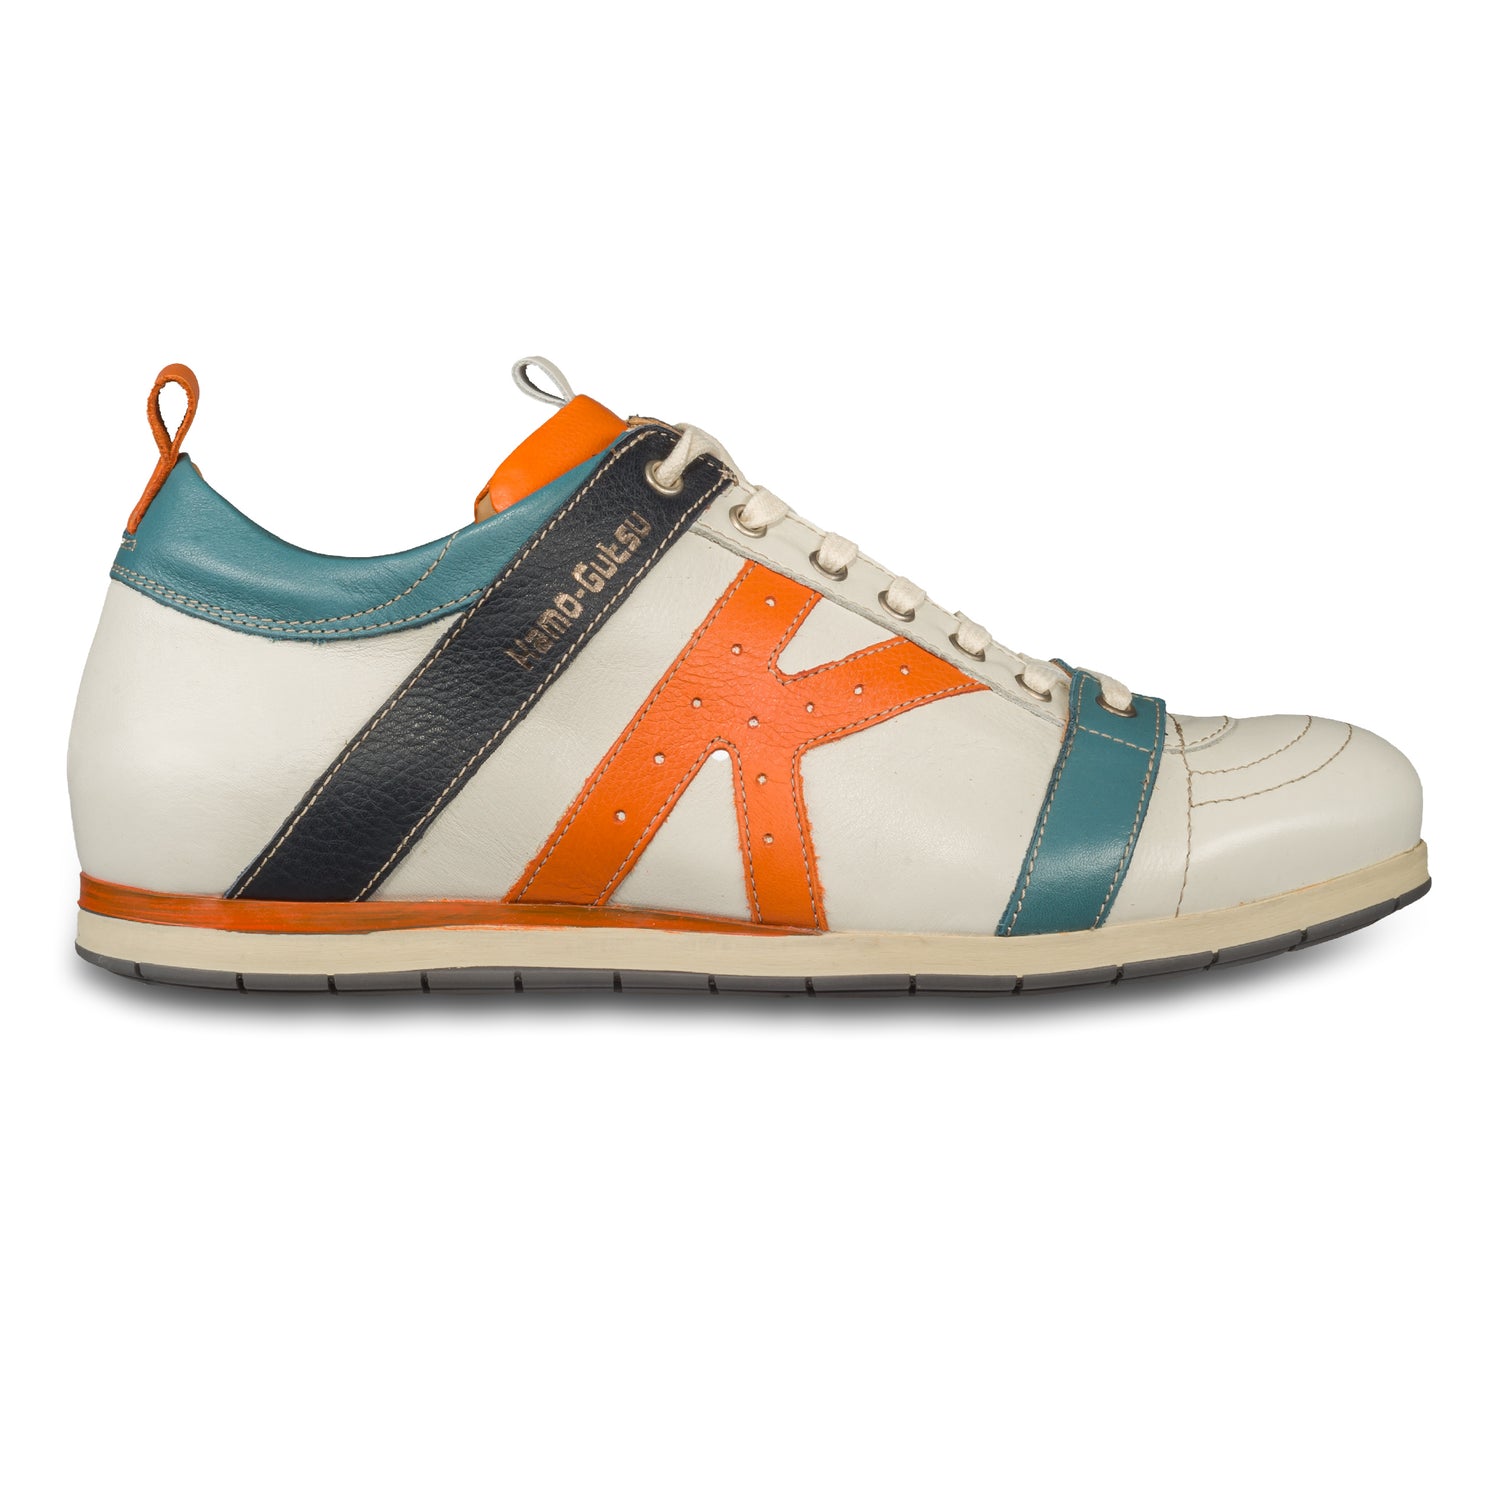 KAMO-GUTSU Herren Leder Sneaker, weiß mit orange und blau, Modell TIFO-042 gel ice arancio. Handgefertigt. Seitliche Ansicht der Außenseite rechter Schuh.